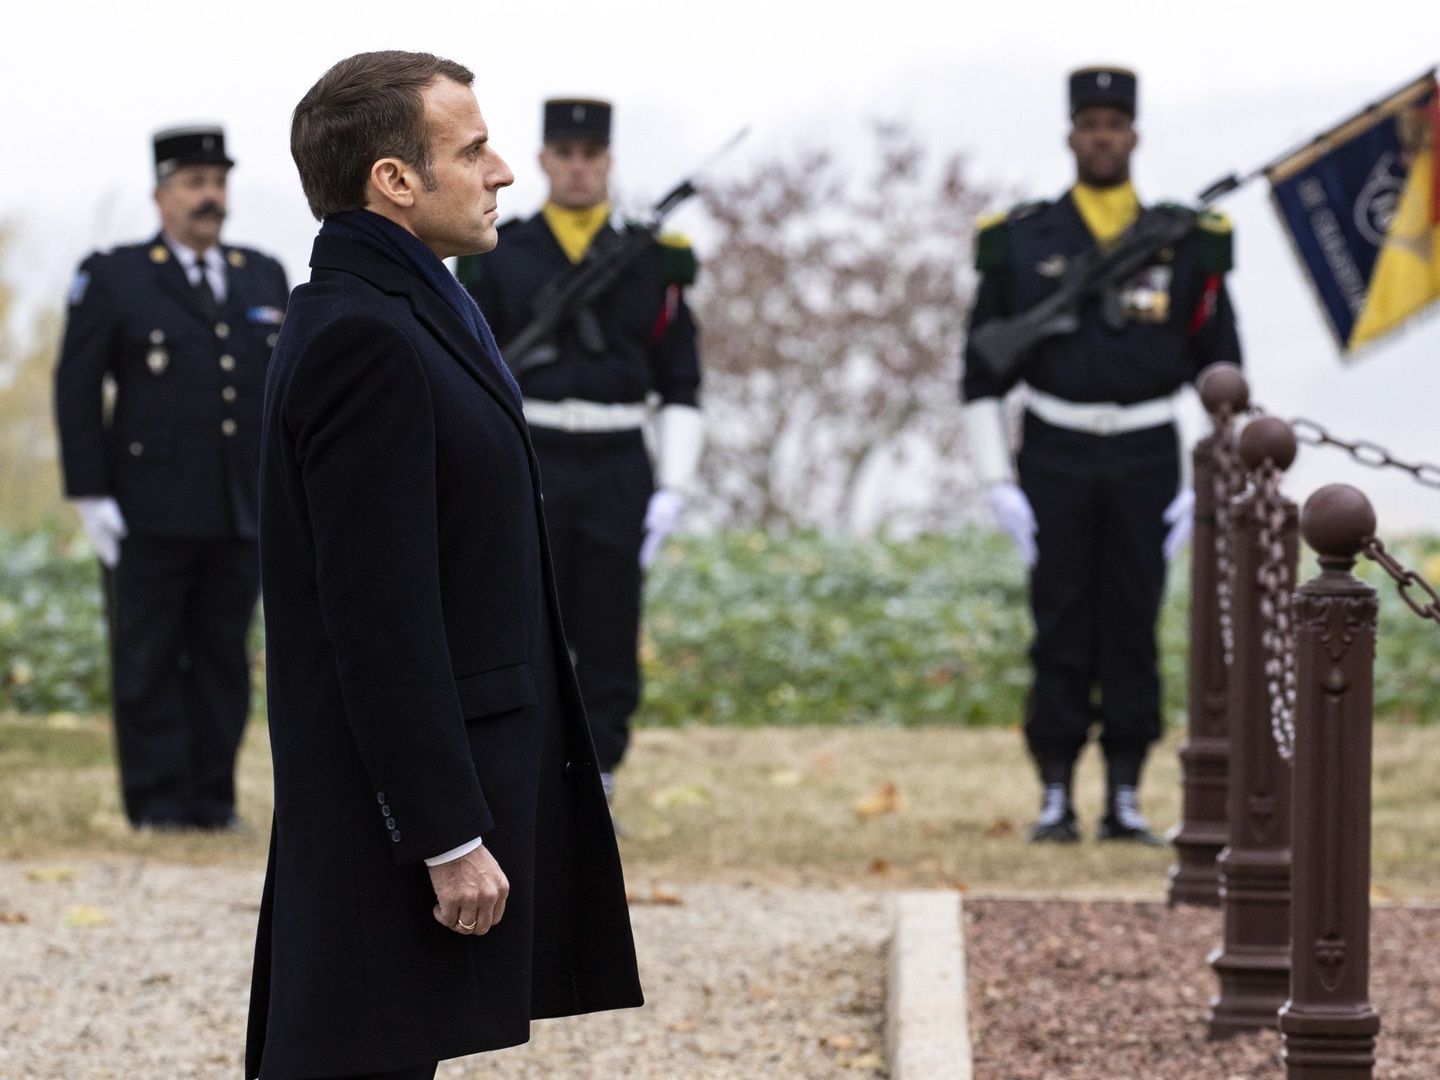 El presidente francés Emmanuel Macron participa en una ceremonia en memoria de los soldados caídos durante la Batalla de las Fronteras, en Morhangue, Francia, el 5 de noviembre de 2018. (EFE)